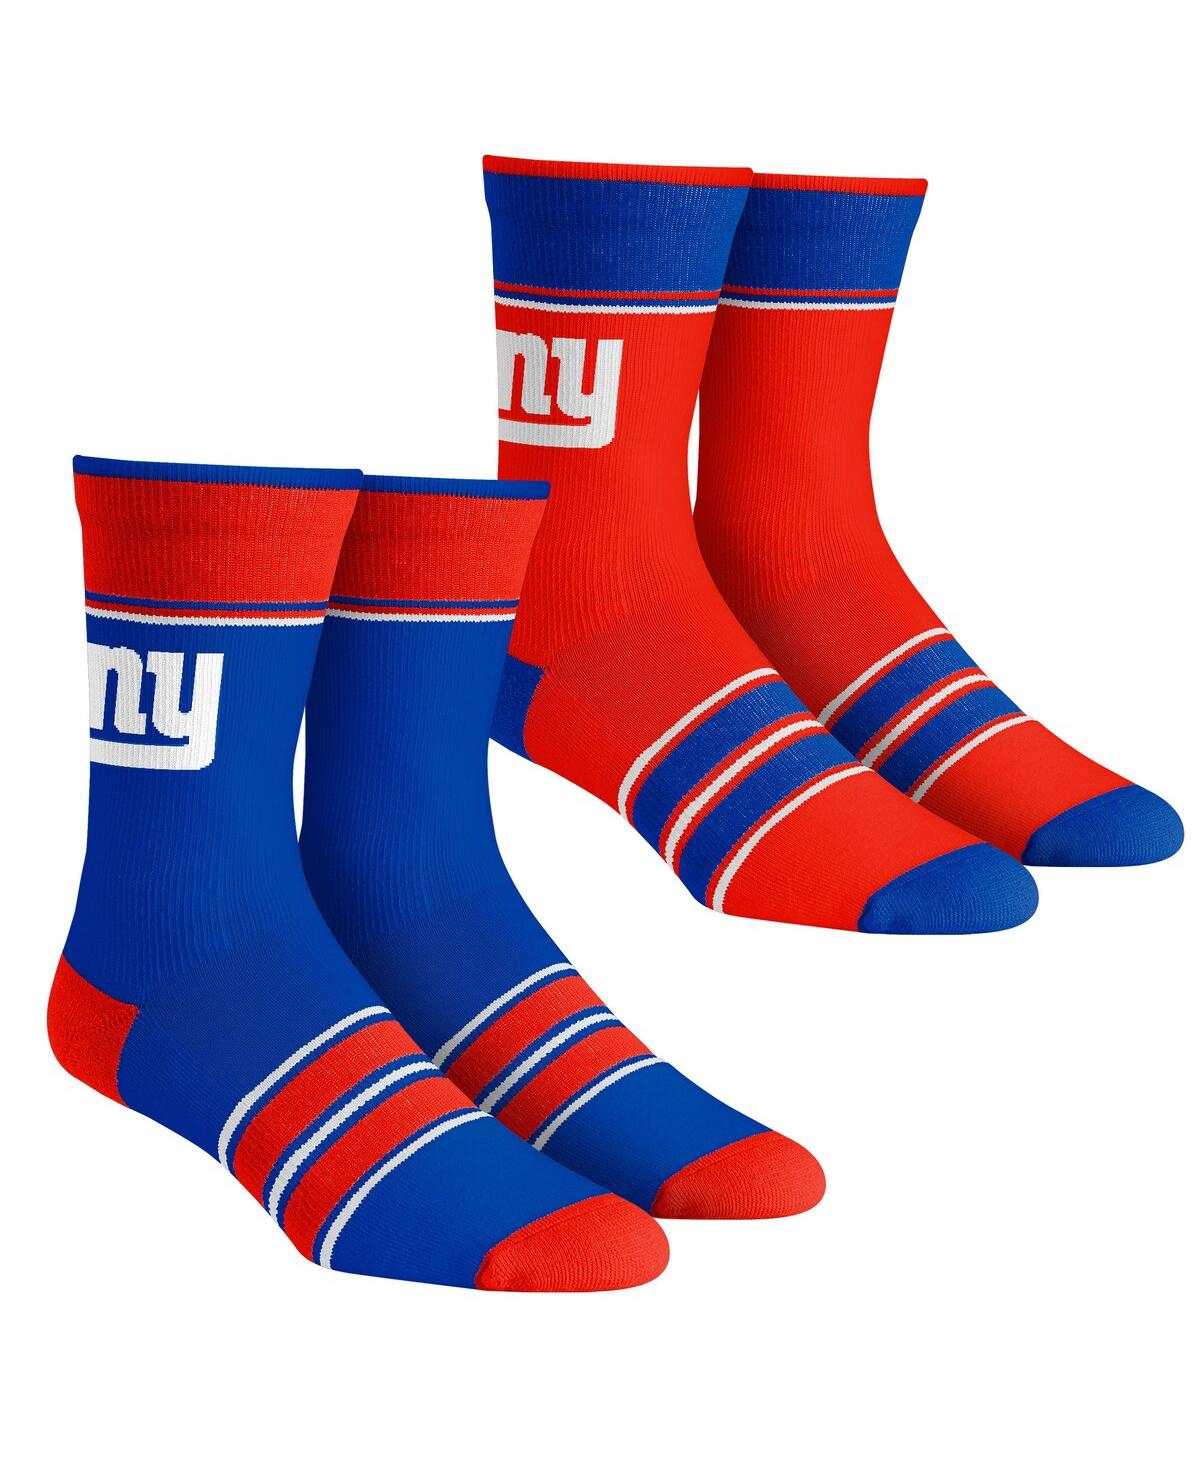 Rock 'em Men's And Women's  Socks New York Giants Multi-stripe 2-pack Team Crew Sock Set